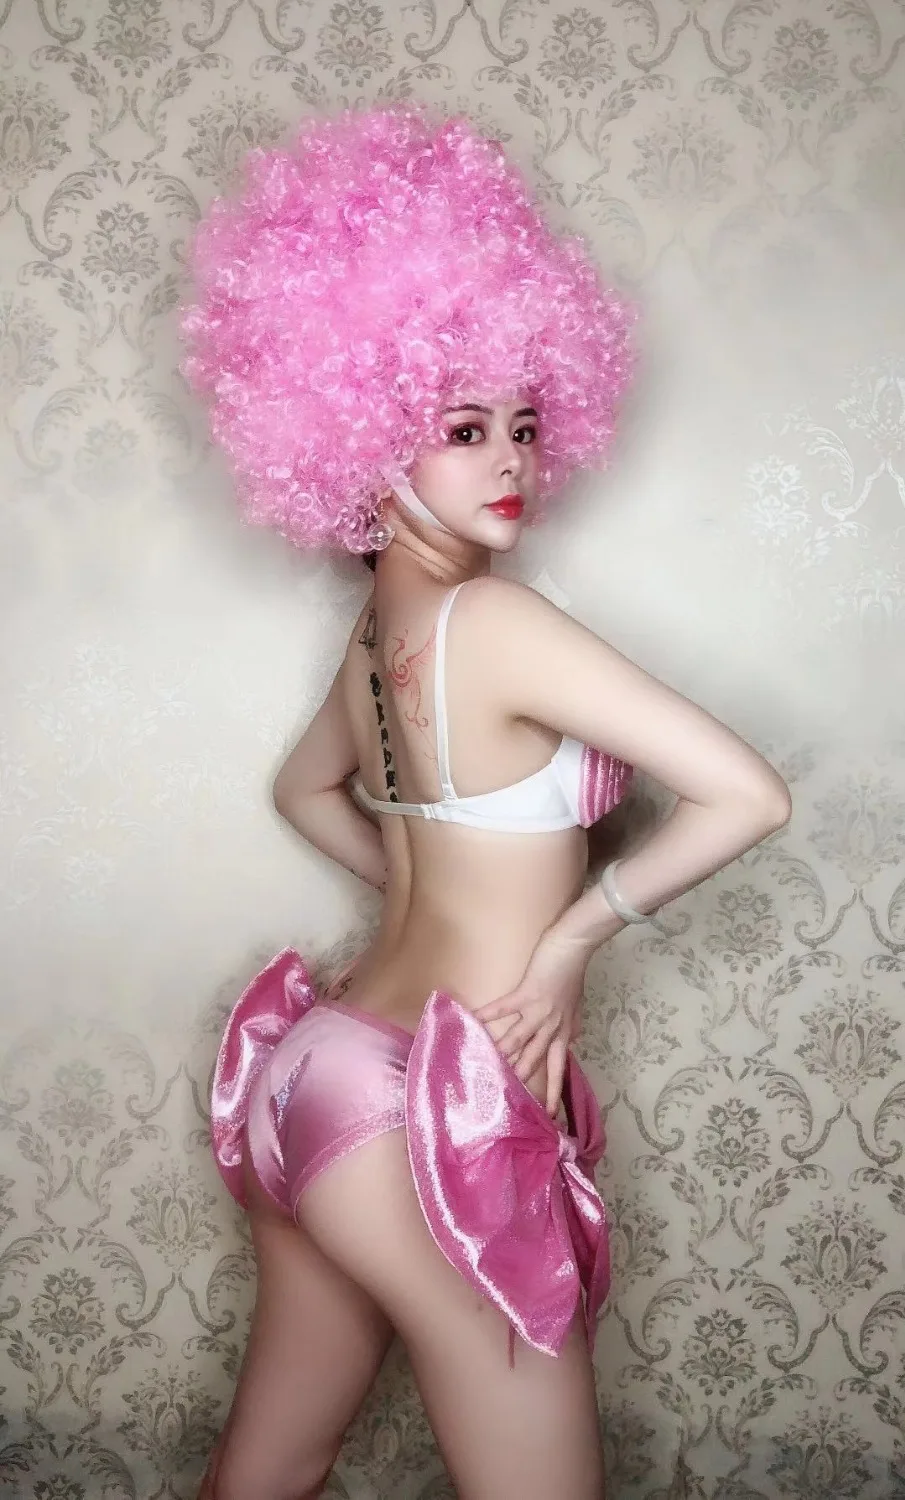 Розовый парик бикини набор сексуальные рейв вечерние костюмы Женская одежда для ночного клуба, бара, DJ DS шоу костюм танцевальные команды наряды